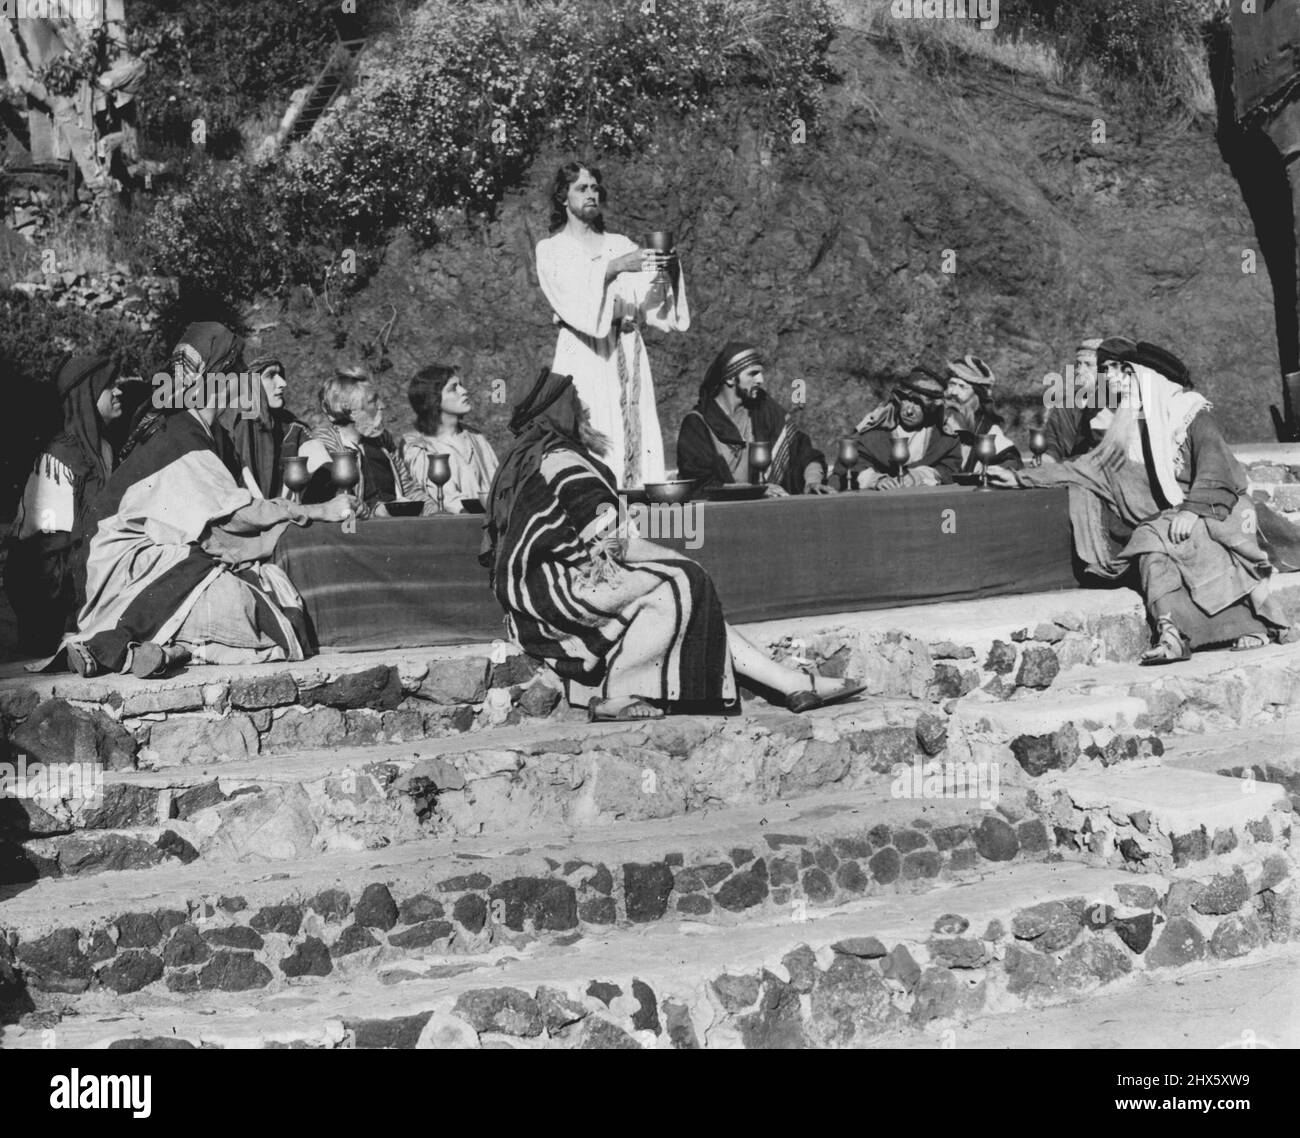 'La Cène' -- représentée par des joueurs hollywoodiens -- cette scène frappante est issue de la pièce de pèlerinage annuelle présentée ici et représente la 'Cène'. Le sol a été récemment brisé pour le nouveau théâtre extérieur qui remplacera la structure détruite par un incendie. Une fois terminé, les paramètres comprendront une ville miniature de Jérusalem. Les productions sont sur une base communautaire à but non lucratif. 17 décembre 1930.;'The Last Cène' -- représentée par des joueurs hollywoodiens -- cette scène saisissante vient de Banque D'Images